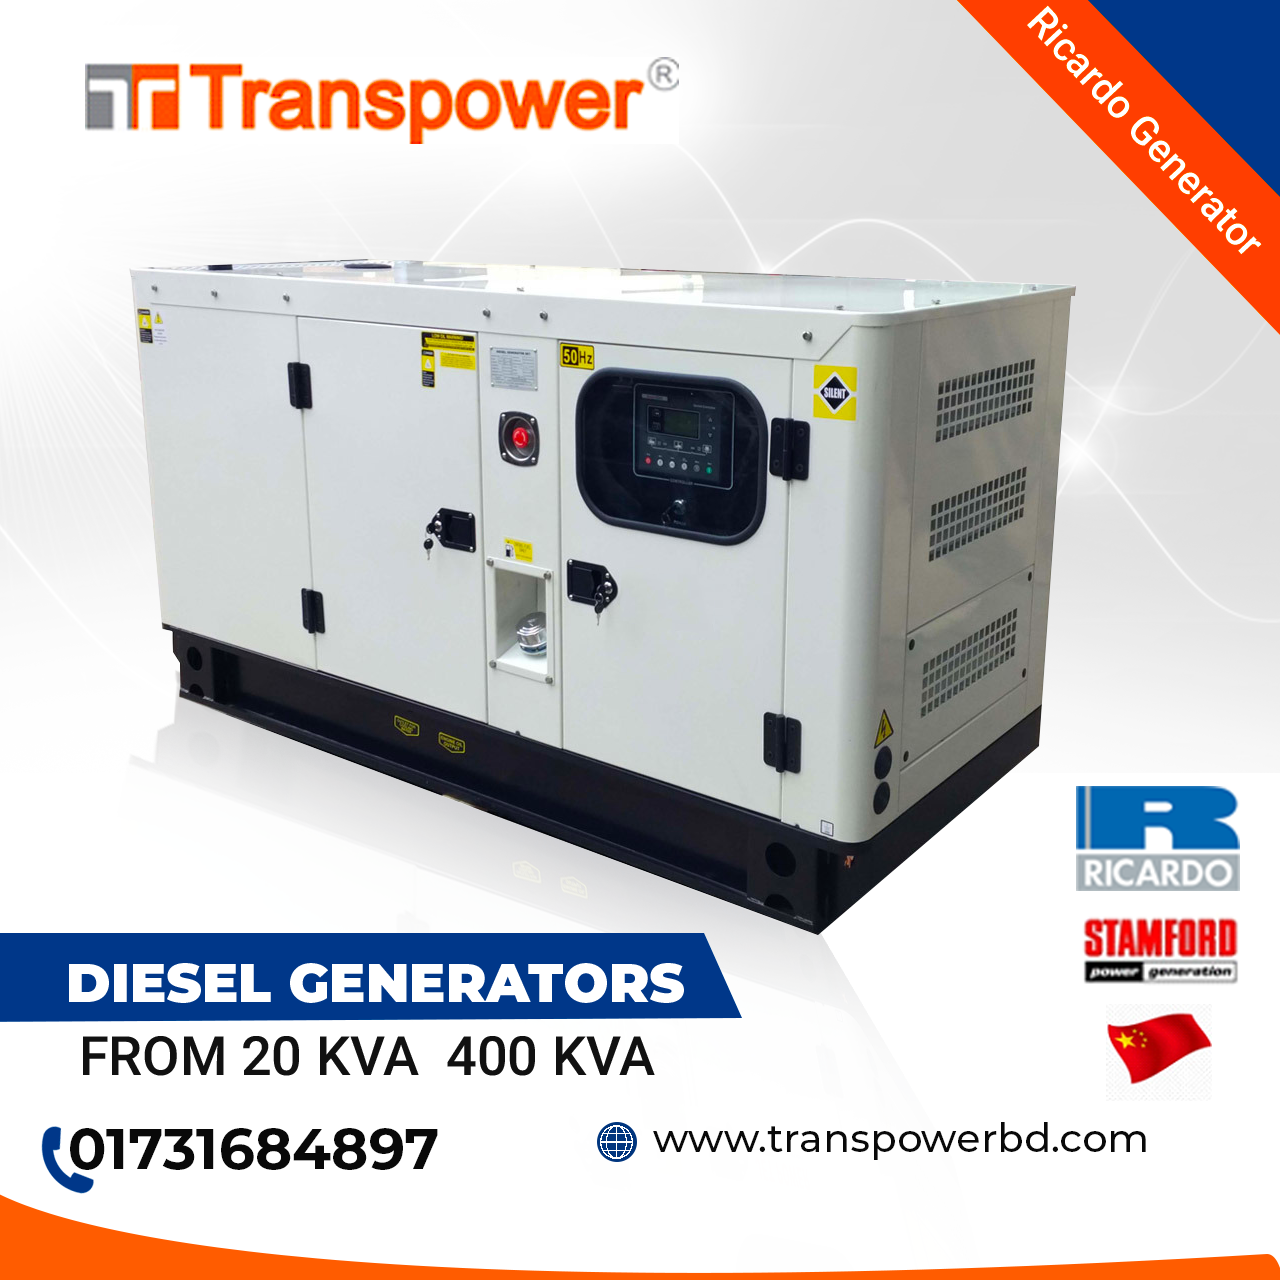 62.5 KVA Ricardo Diesel Generator (Origin: China)